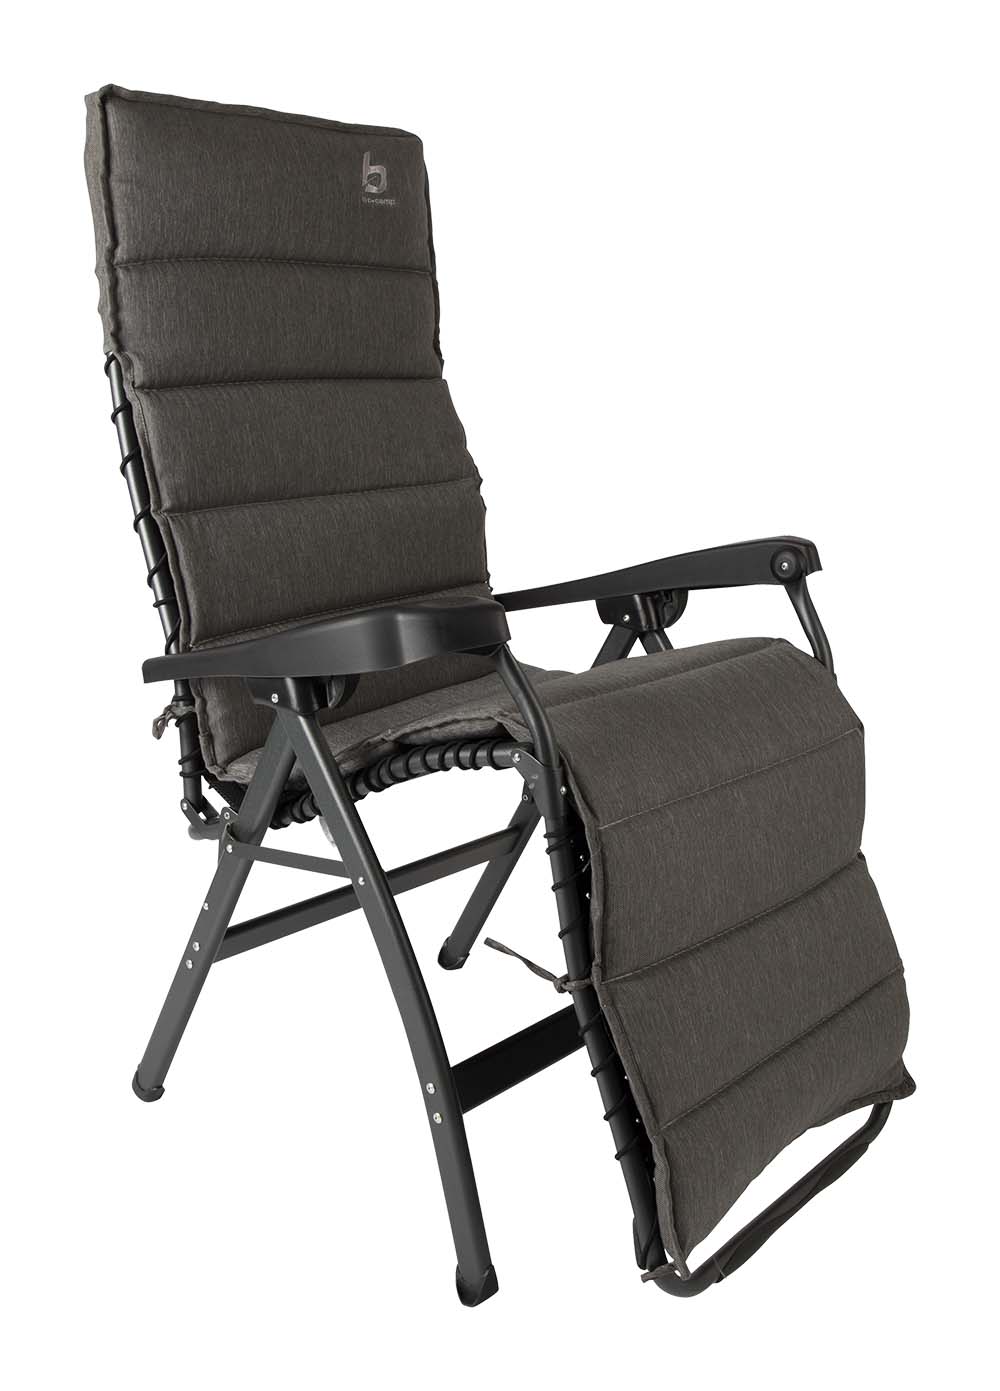 1849330 Ein universeller Sitzbezug für Liegestühle. Hergestellt aus einem sehr bequemen Olefin-Gewebe. Dieser Stoff macht den Sitzbezug wasserabweisend und besonders resistent gegen das Ausbleichen durch die Sonne. Darüber hinaus ist die Stuhlabdeckung sehr pflegeleicht und hat eine lange Lebensdauer. Inklusive Kordel, damit der Sesselbezug auf jede Sesselgröße passt.